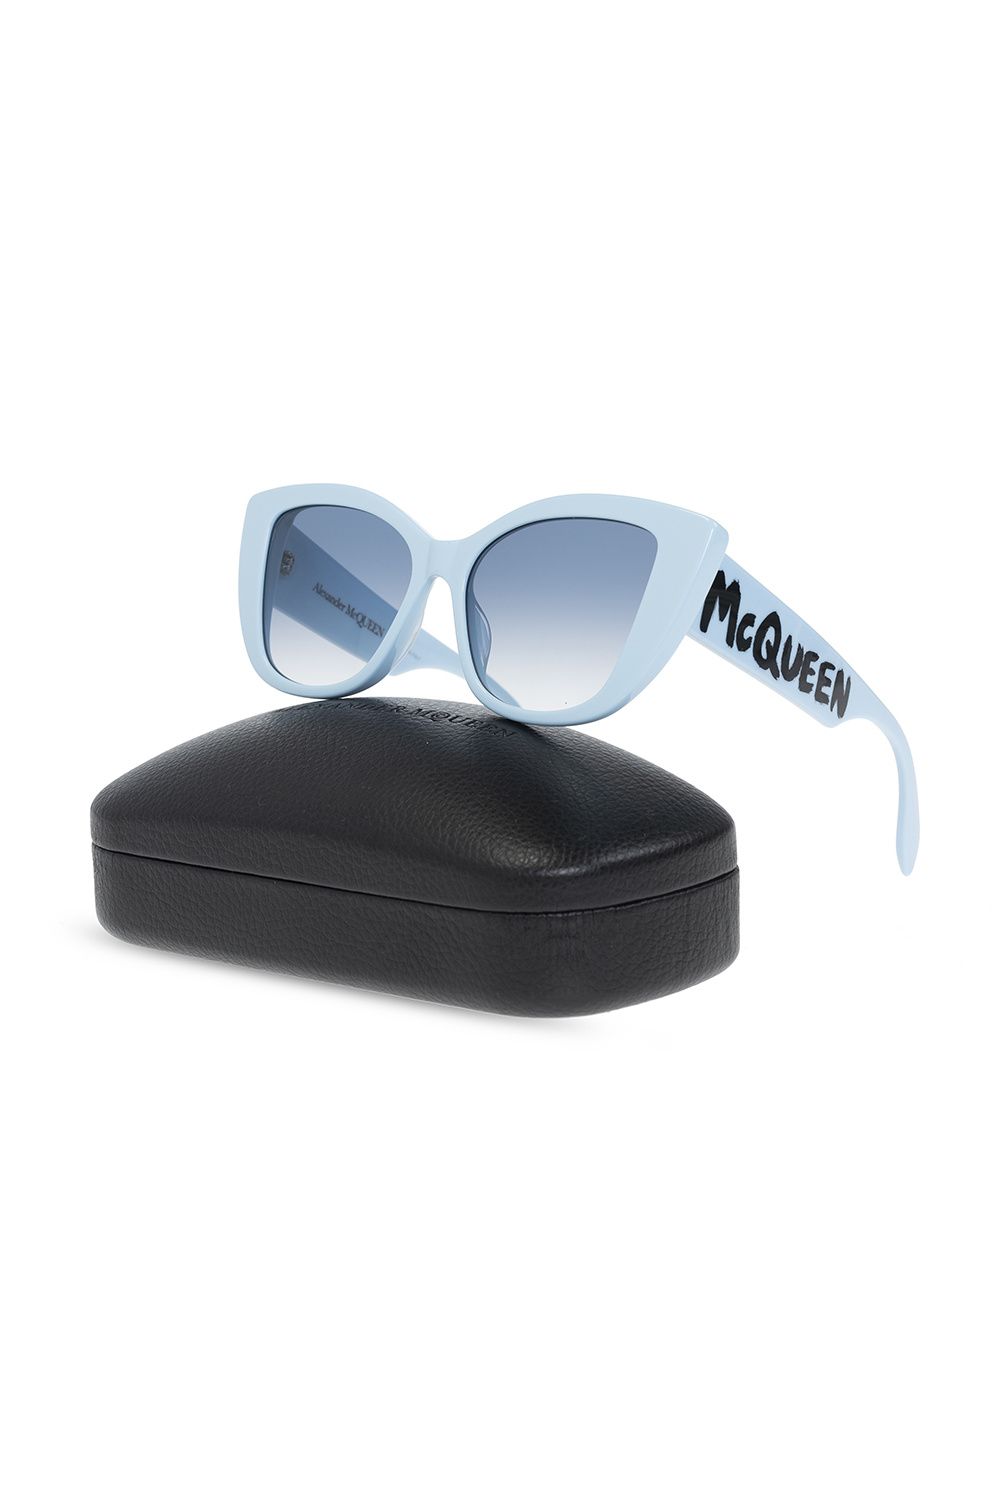 Alexander McQueen sunglasses 6125 30022A